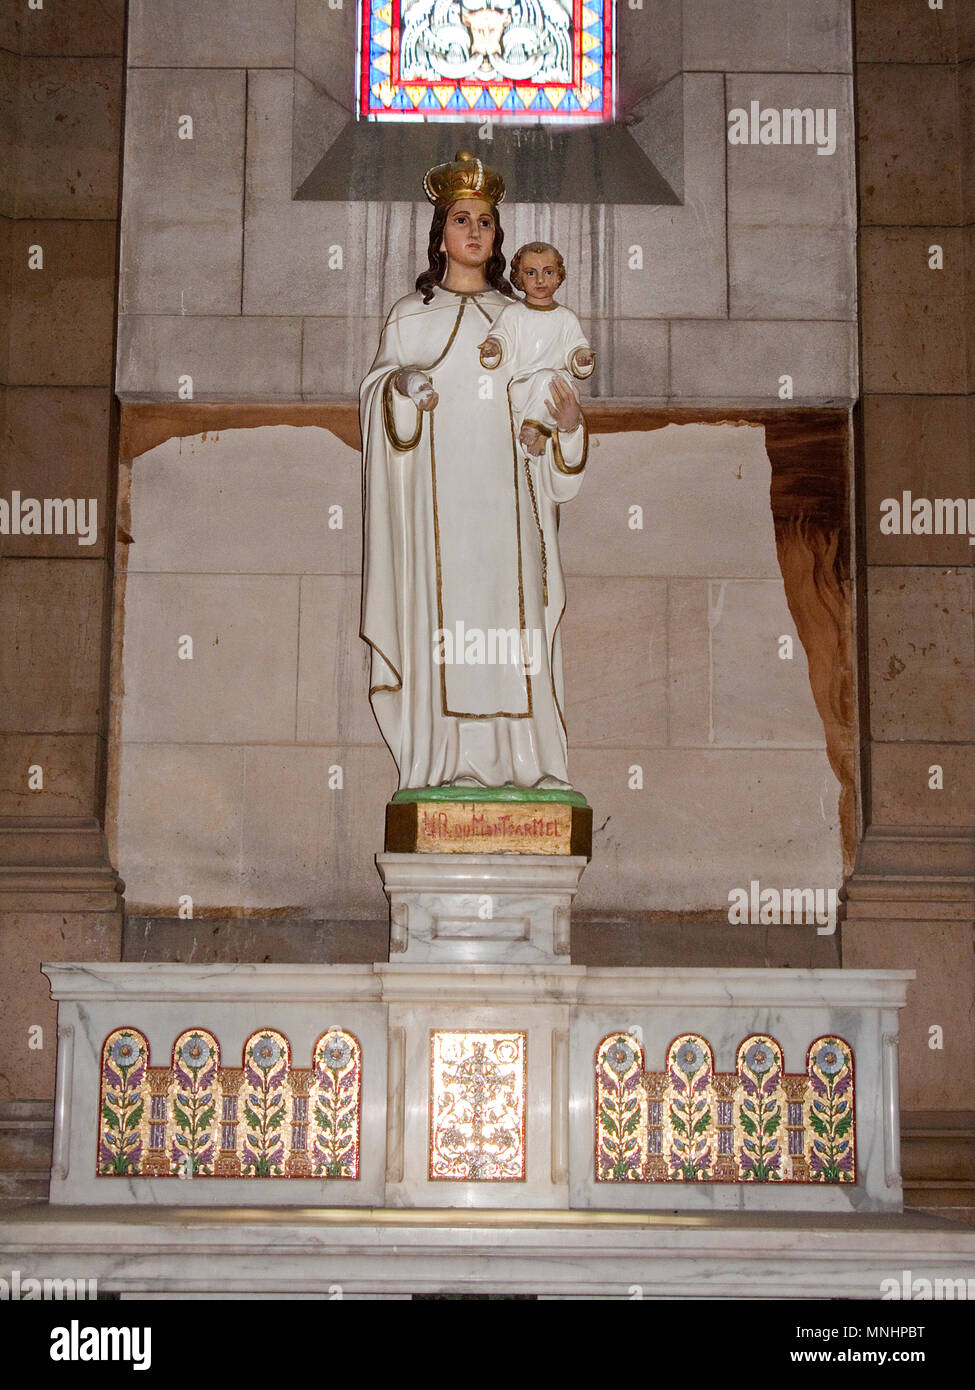 La Bienheureuse Vierge Marie avec l'enfant Jésus à l'intérieur de Cathédrale Sainte-Marie-Majeure de Marseille, Bouches-du-Rhône, Provence-Alpes-Côte d'Azur, France Banque D'Images